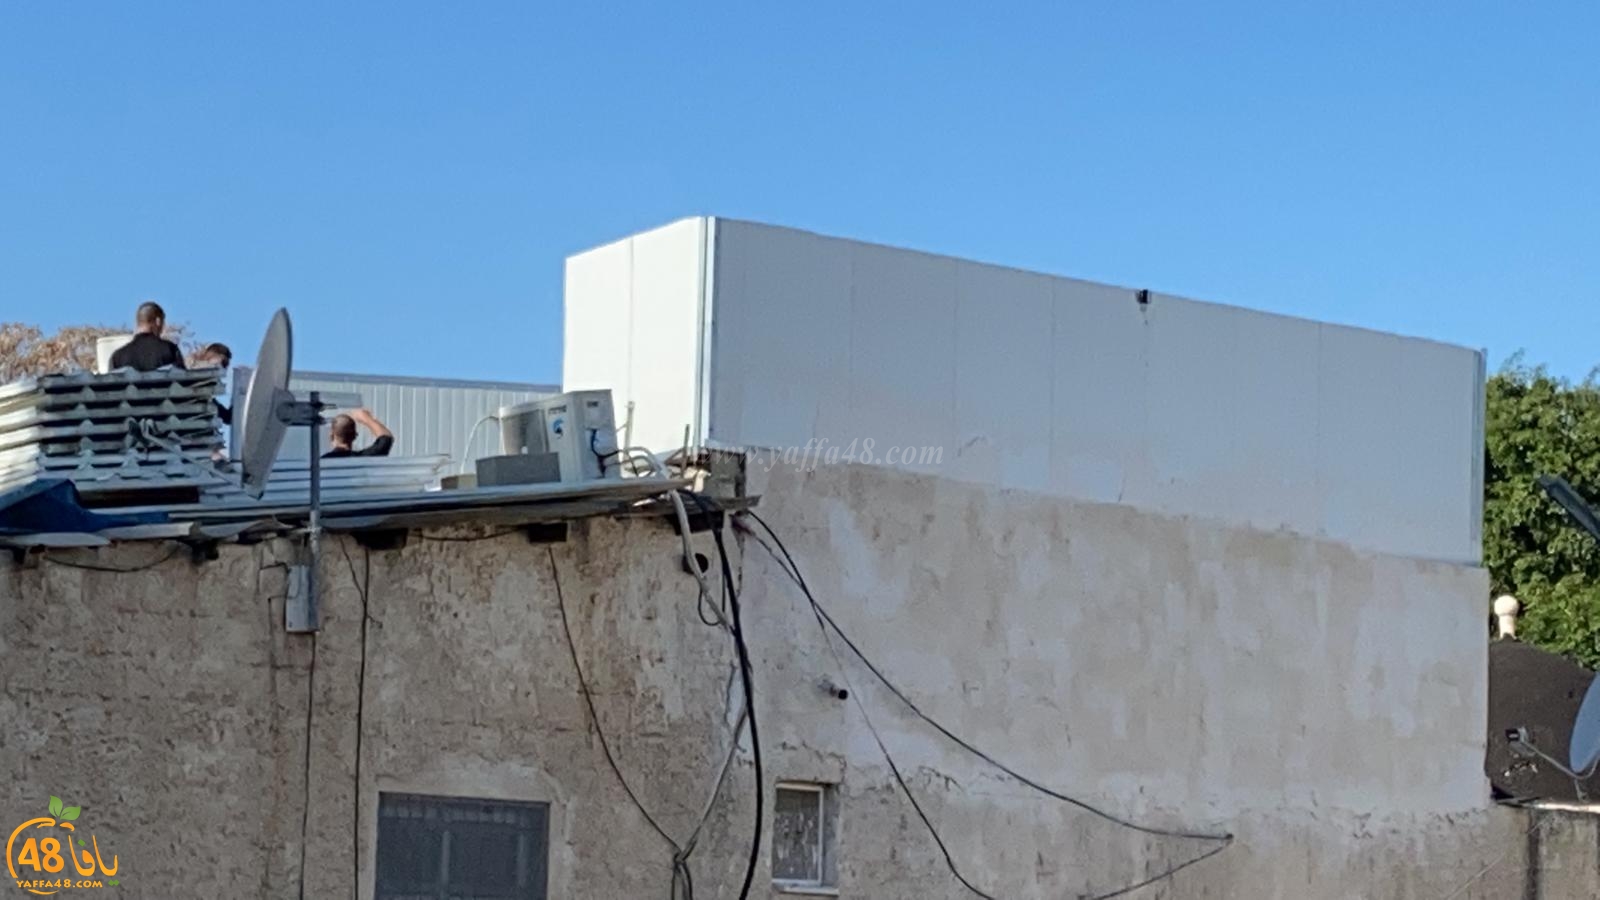  مواطن من اللد يهدم سقف منزله خشية من دفع غرامات للبلدية 